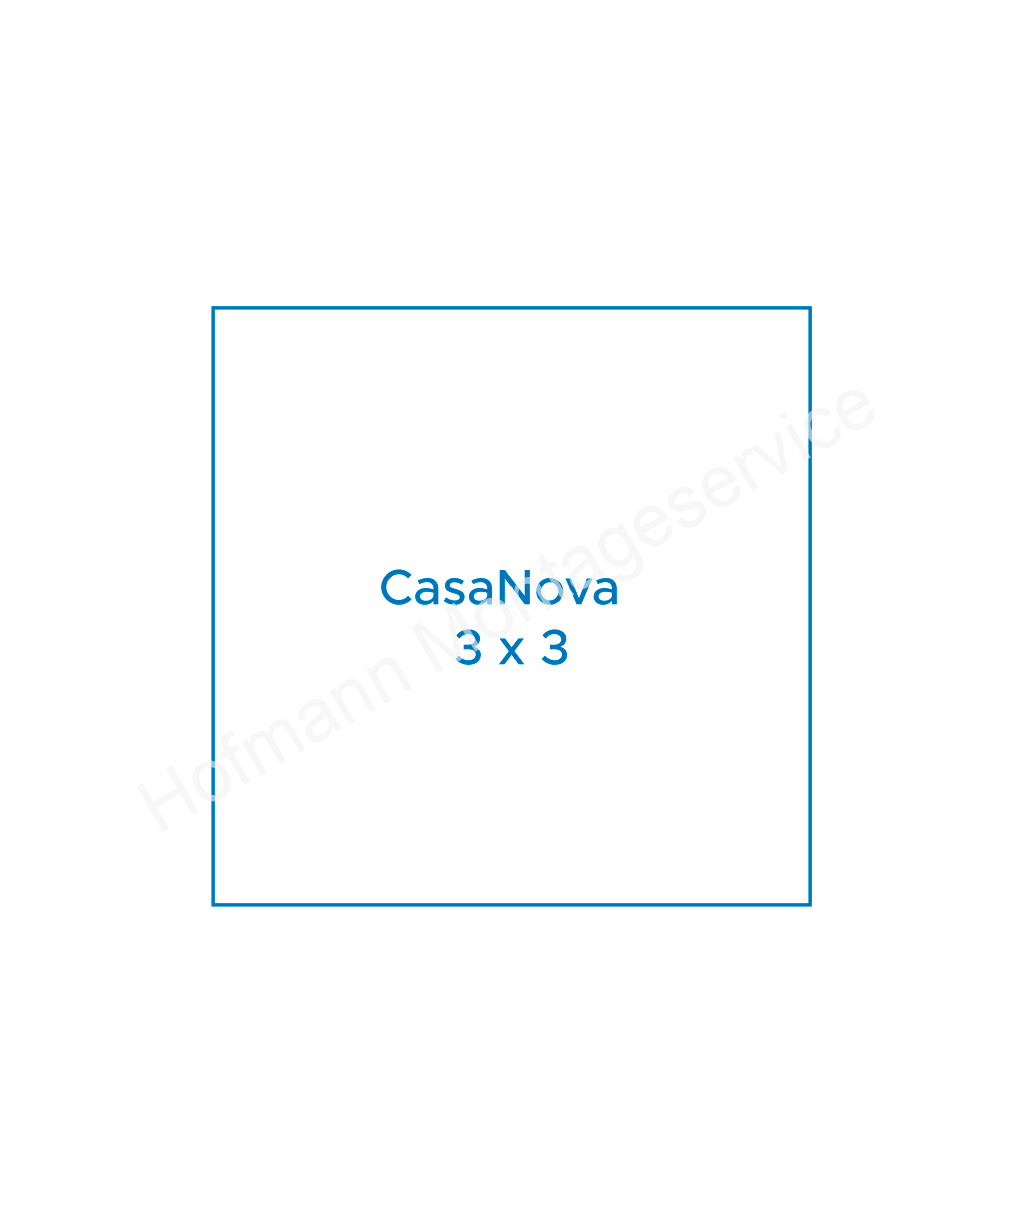 CasaNova 3x3